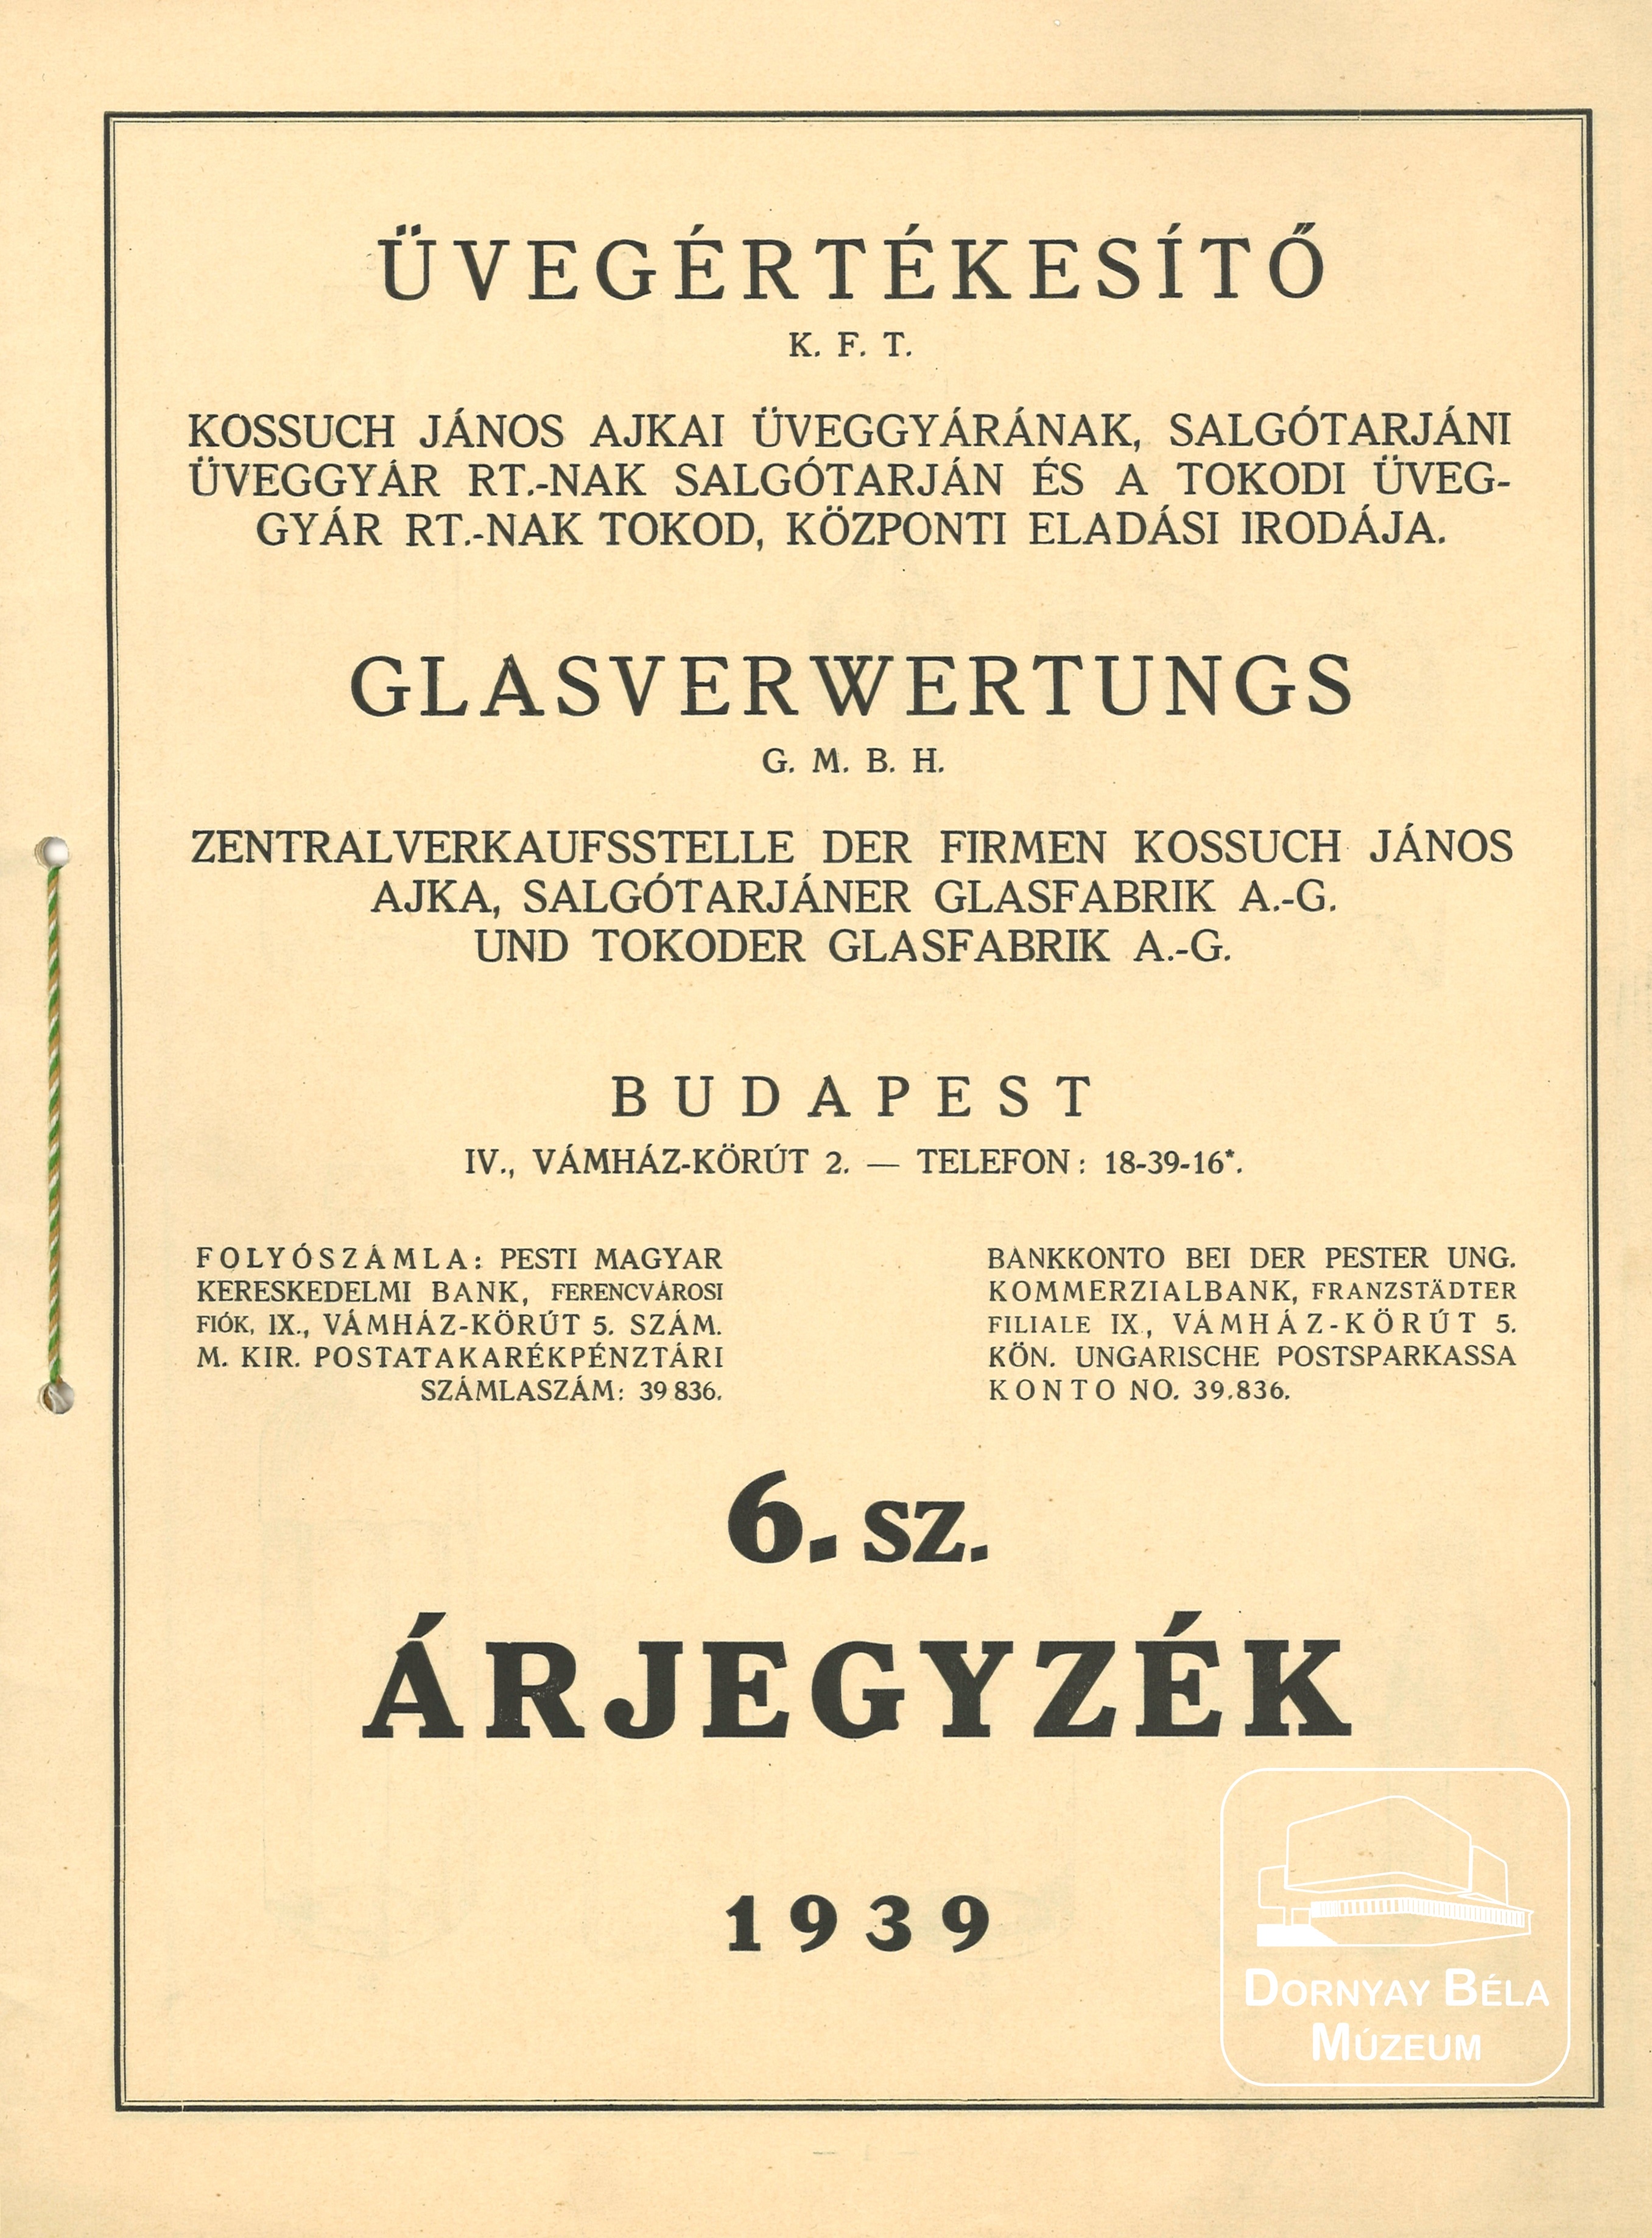 Üvegértékesítő Kft. 6. számú árjegyzéke (Dornyay Béla Múzeum, Salgótarján CC BY-NC-SA)